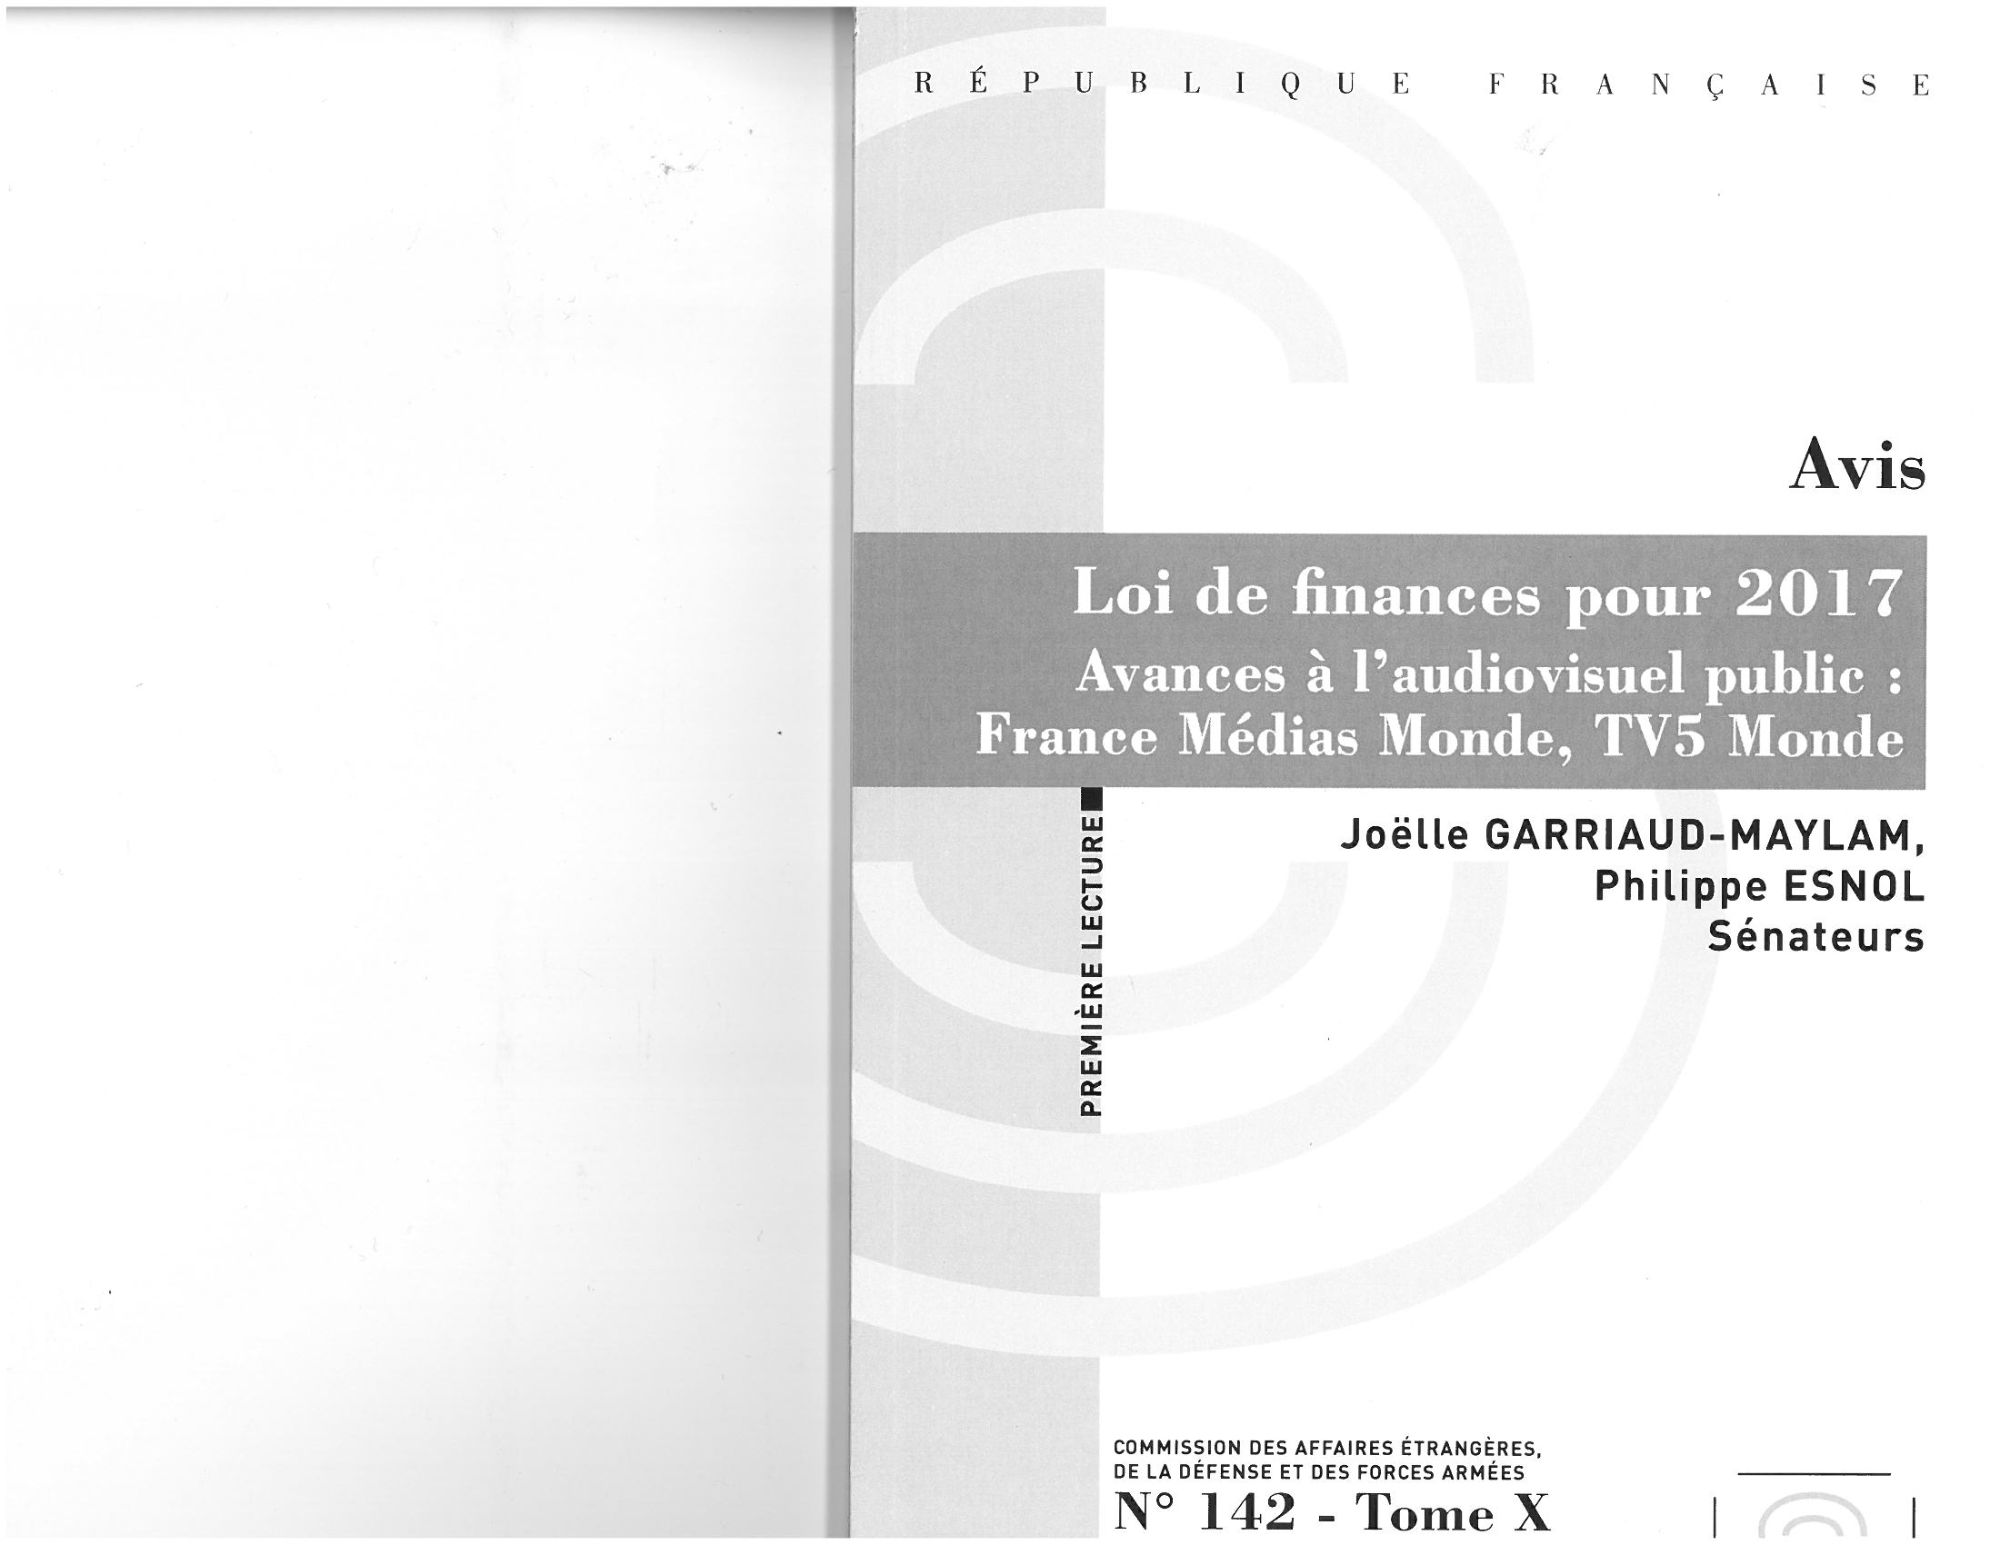 Avis - Loi de finances pour 2017 - Avance à l'audiovisuel public: FMM, TV5 Monde